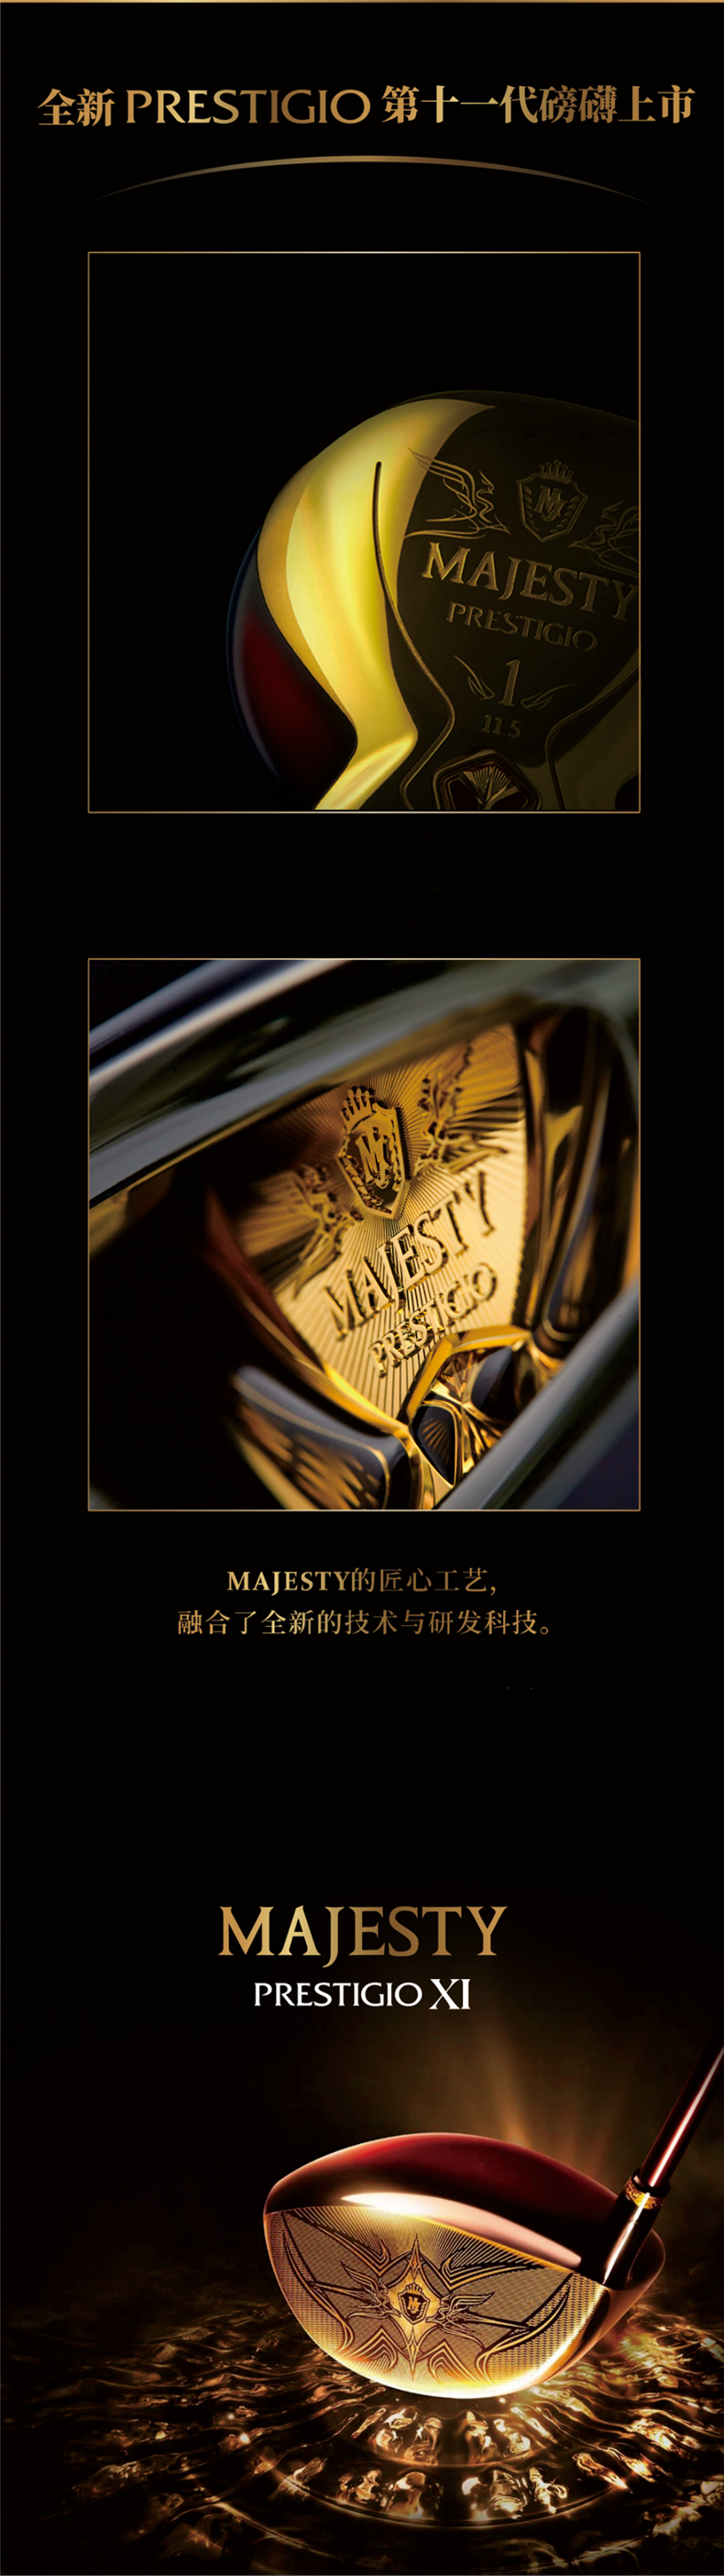 MAJESTY玛嘉斯帝日本高尔夫球杆PRESTIGIO XI系列女士套杆新款